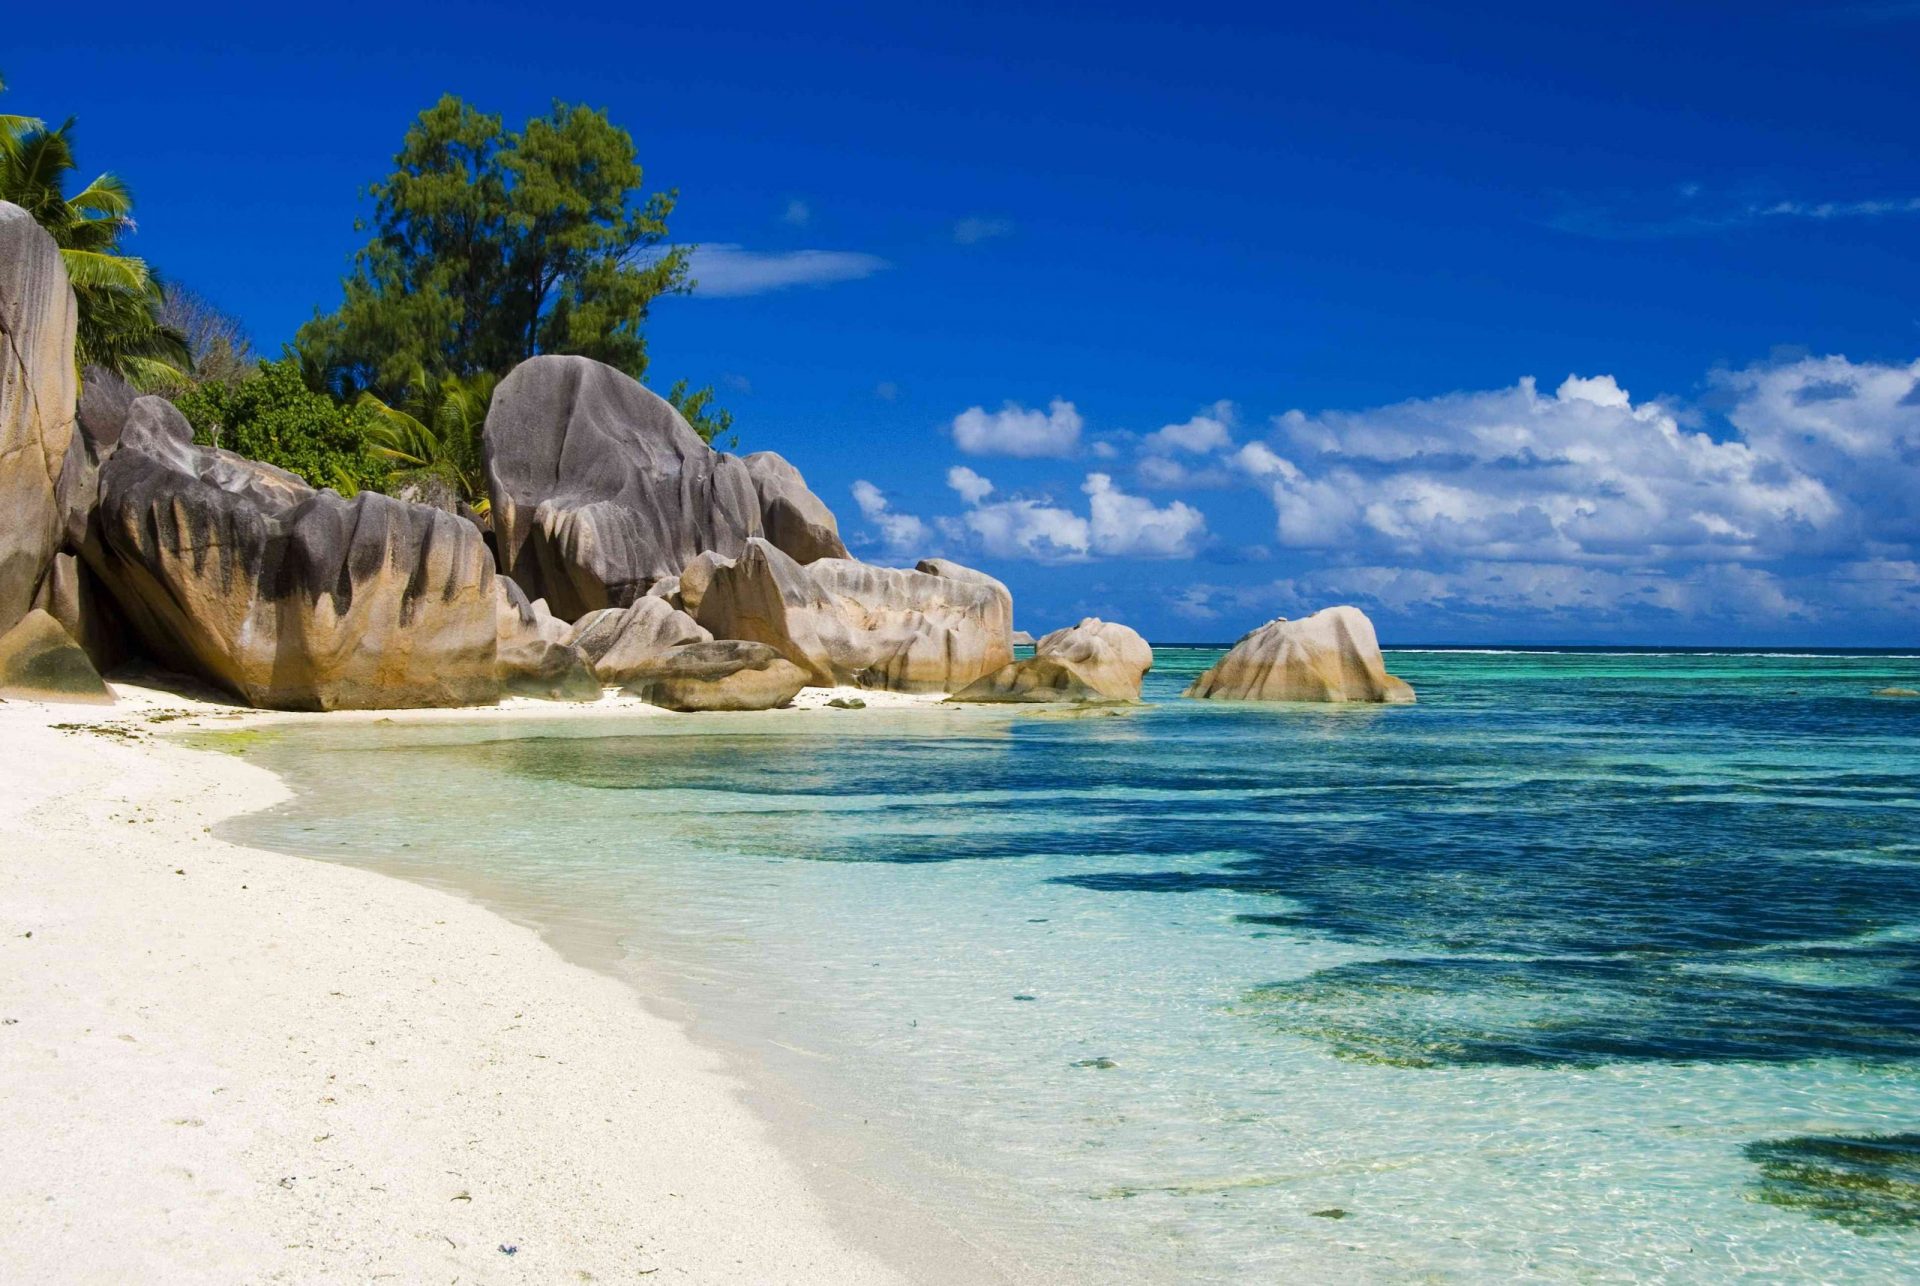 Las rocas de las Seychelles y el mar cristalino en La Digue